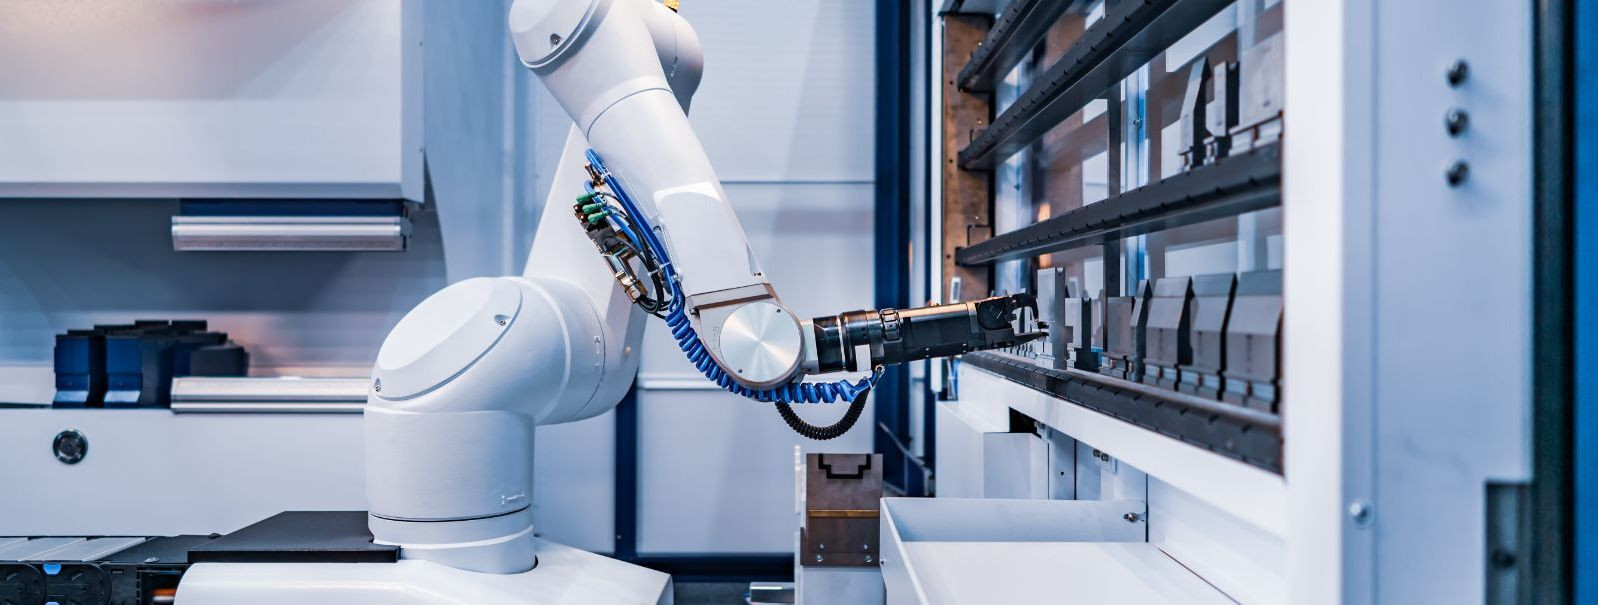 Robotid on revolutsiooniliselt muutnud tootmistööstust, pakkudes enneolematut kiirust, efektiivsust ja täpsust. Kuna nõudlus kohandamise ja paindlikkuse järele 